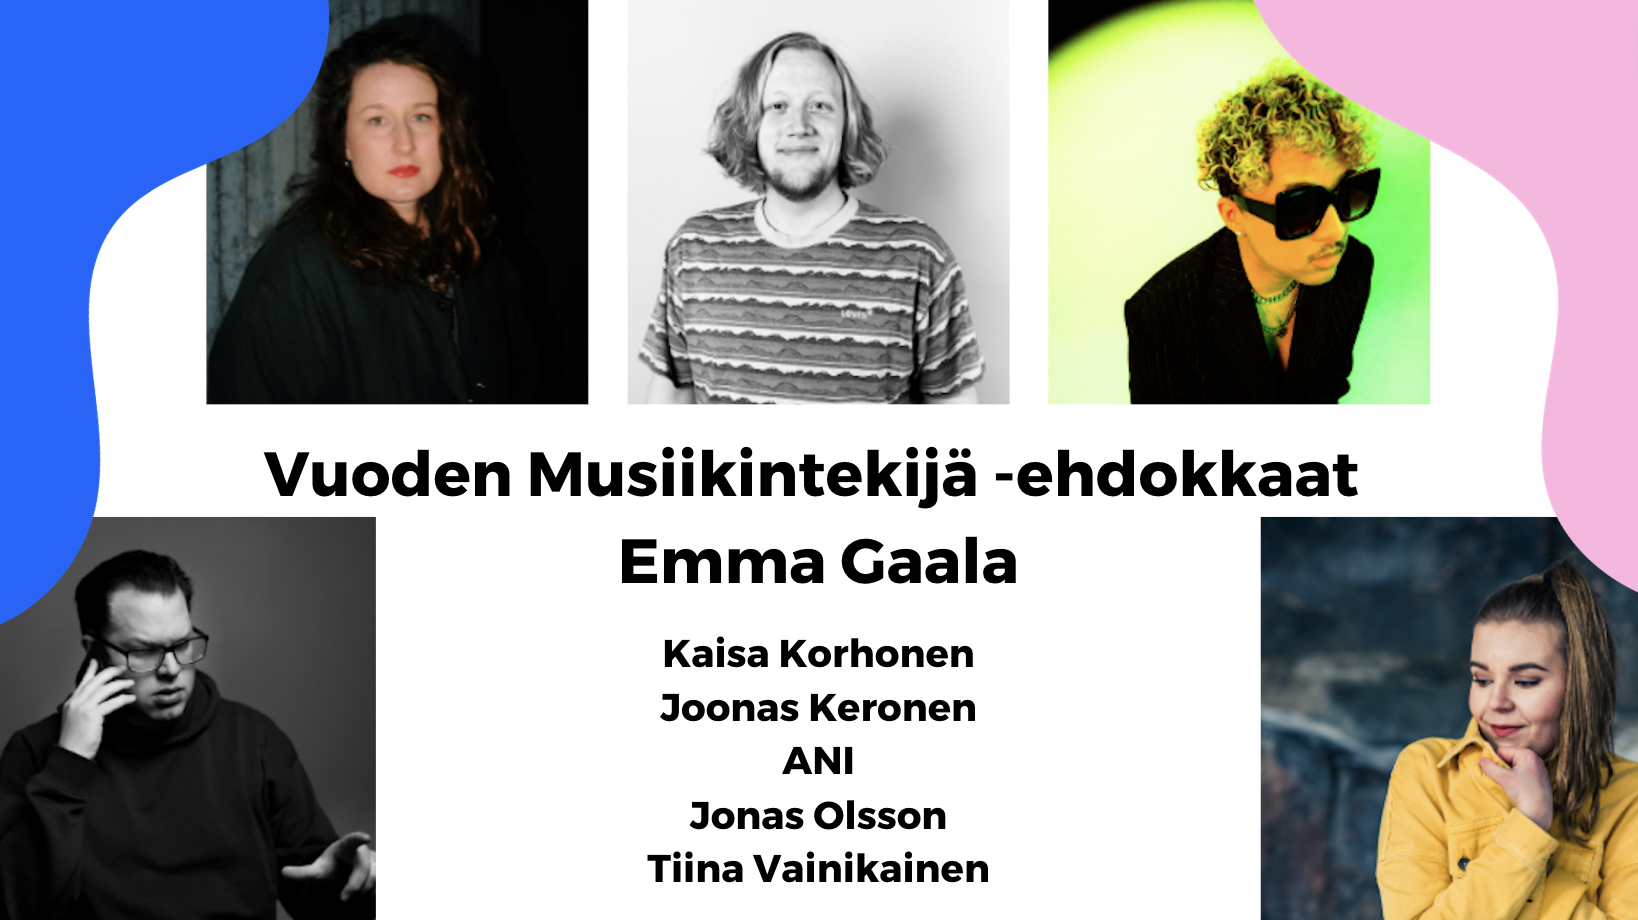 Vuoden 2022 Emma Gaala ehdokkaat julkistettu – mukana ensimmäistä kertaa Vuoden Musiikintekijä -palkinto